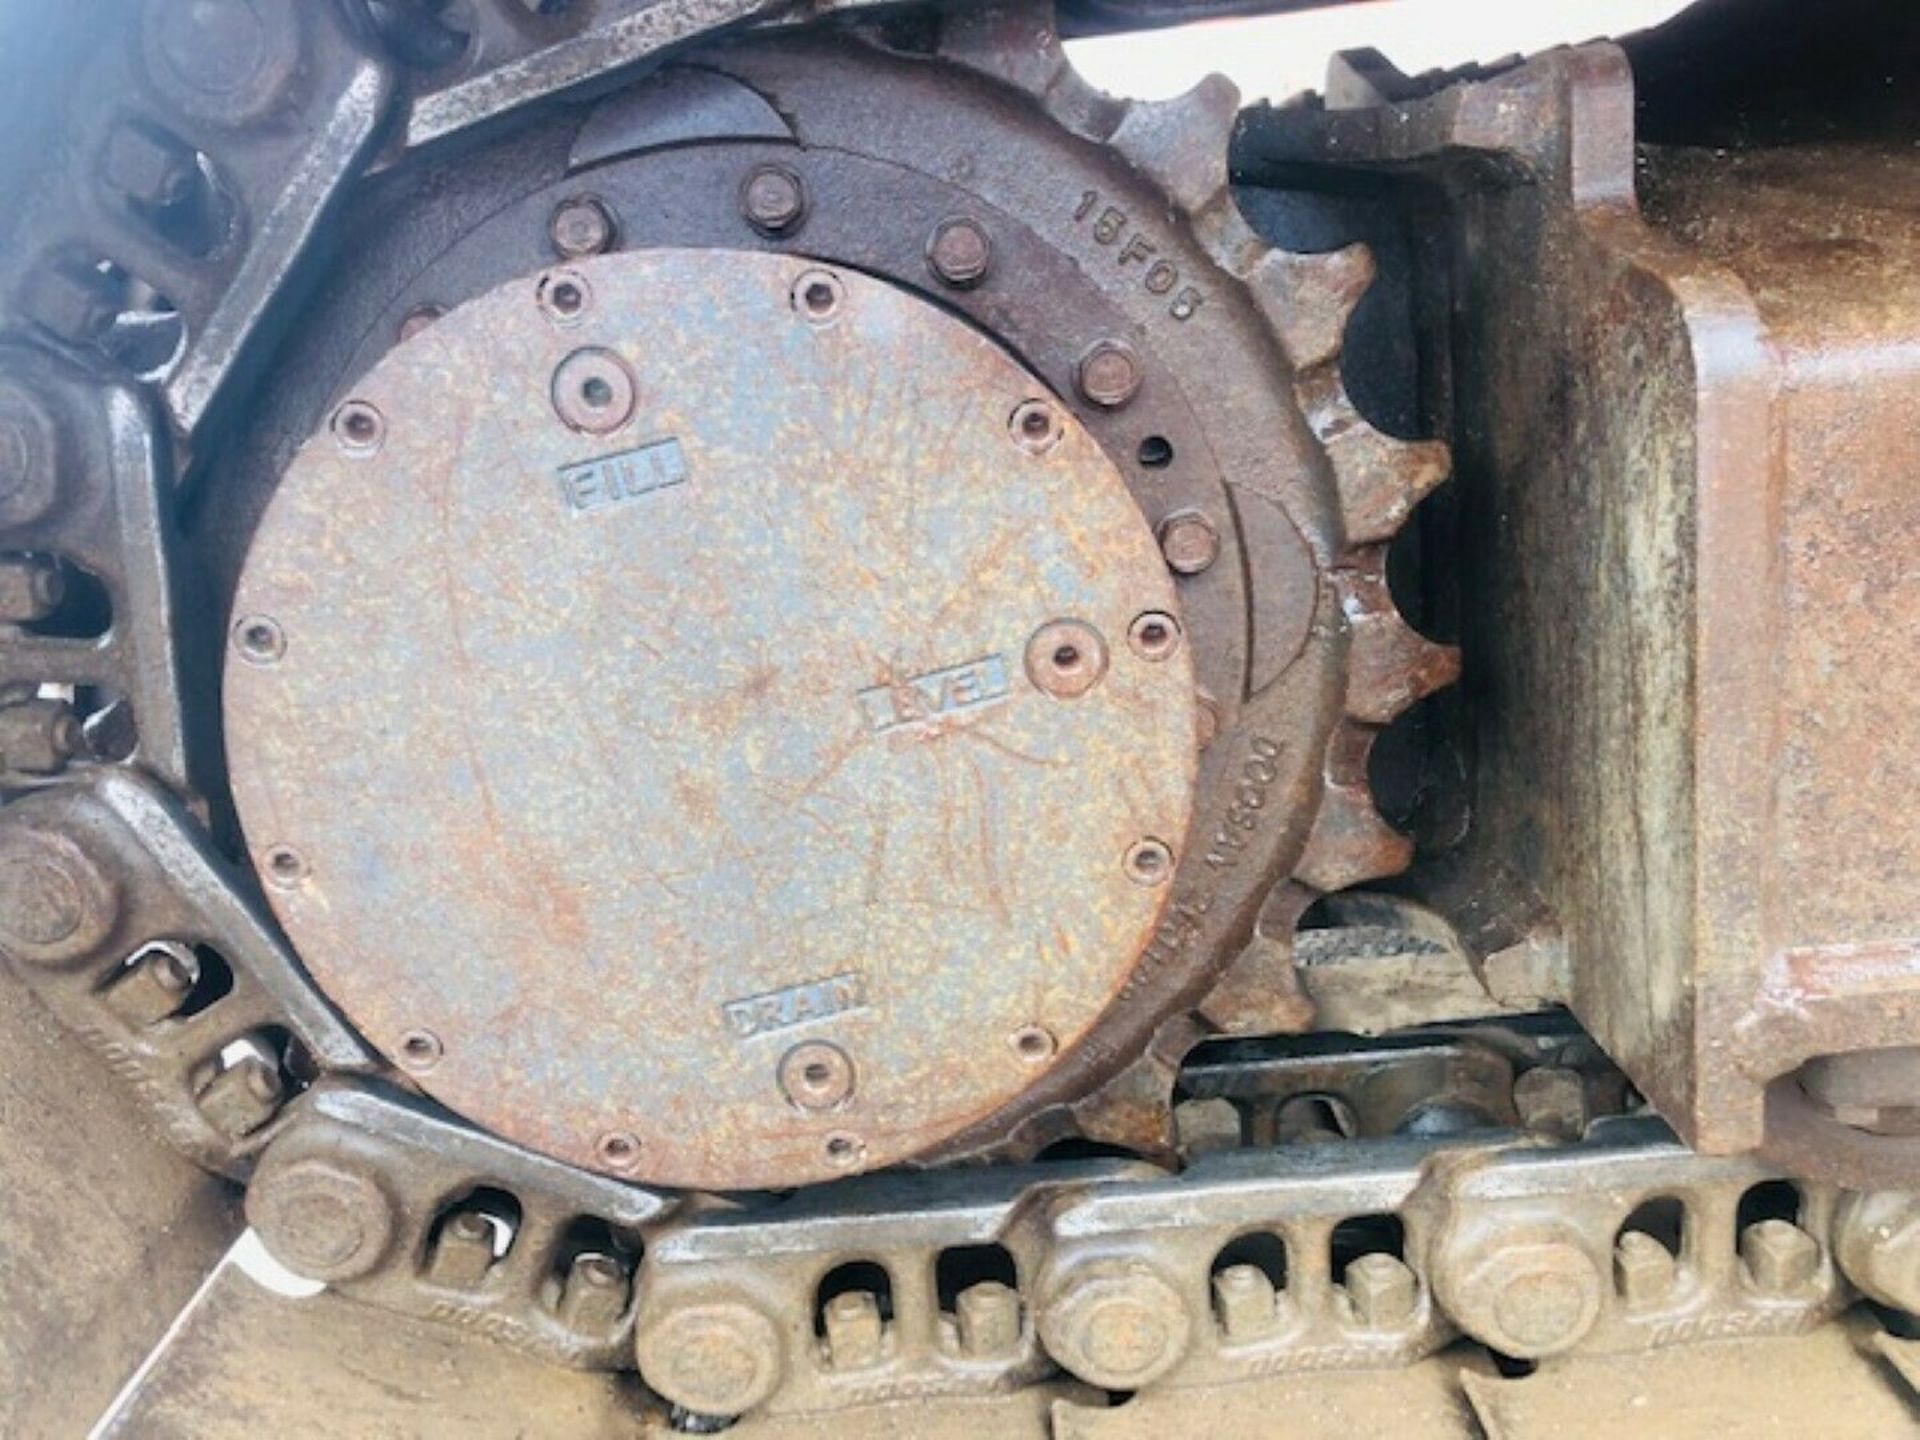 Doosan DX140-LC Excavator Digger - Image 2 of 12